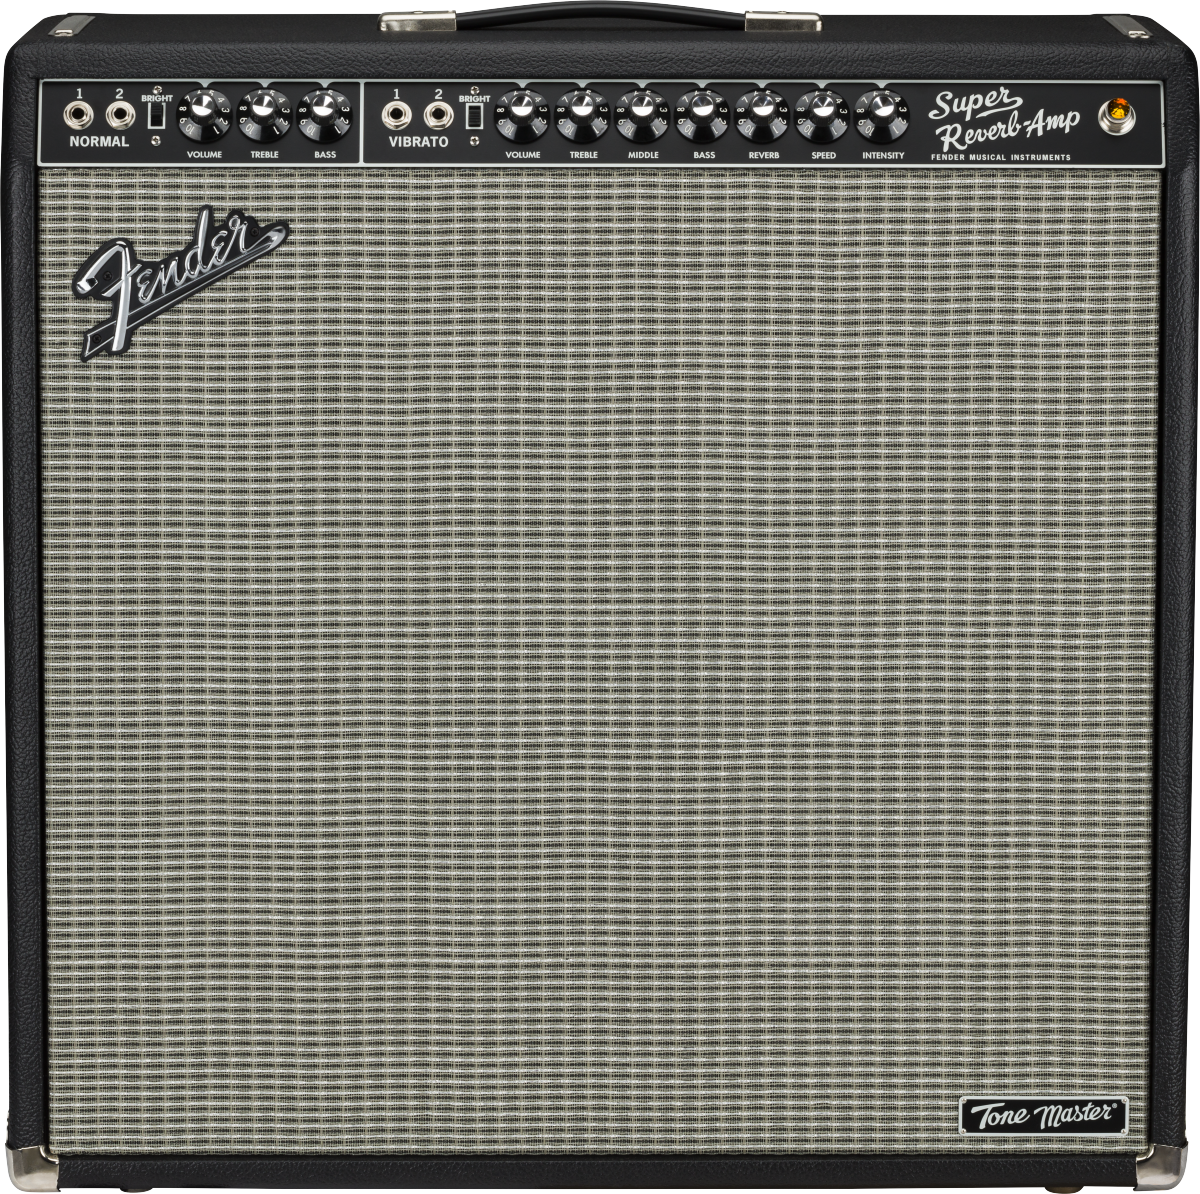 Front of Fender Tone Master Super Reverb 120V.